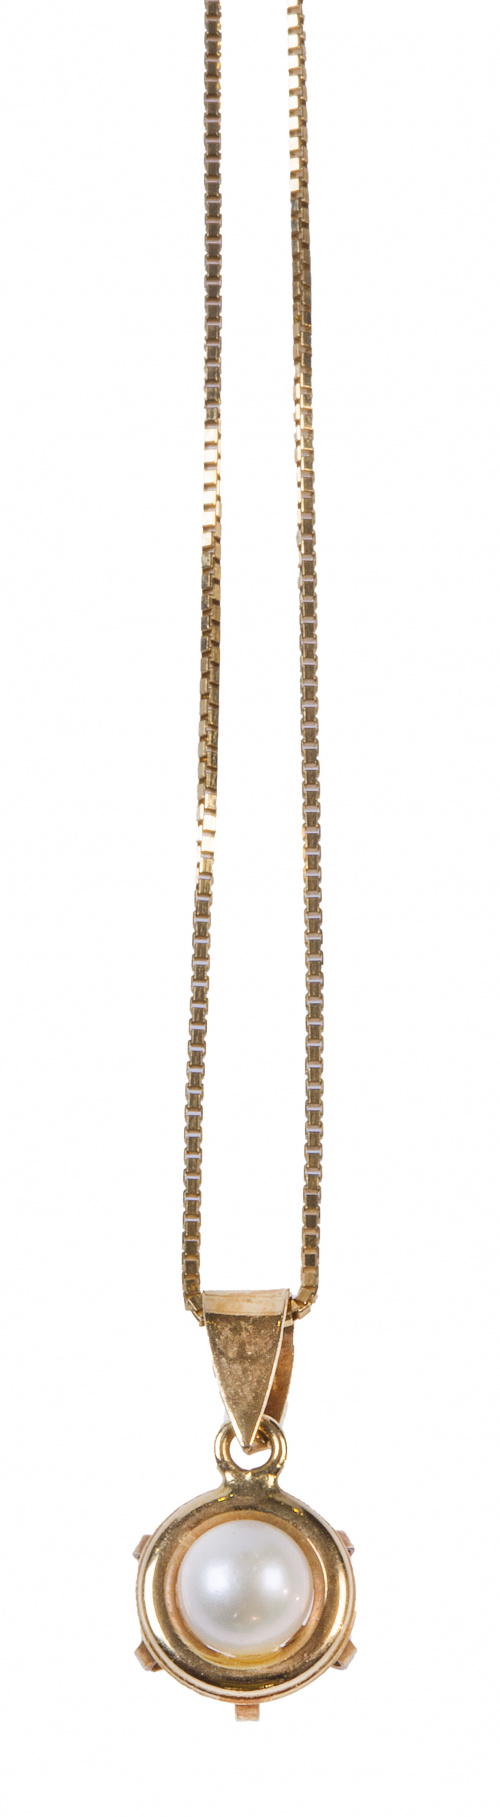 Conjunto de collar con pendientes con perla central sobre m